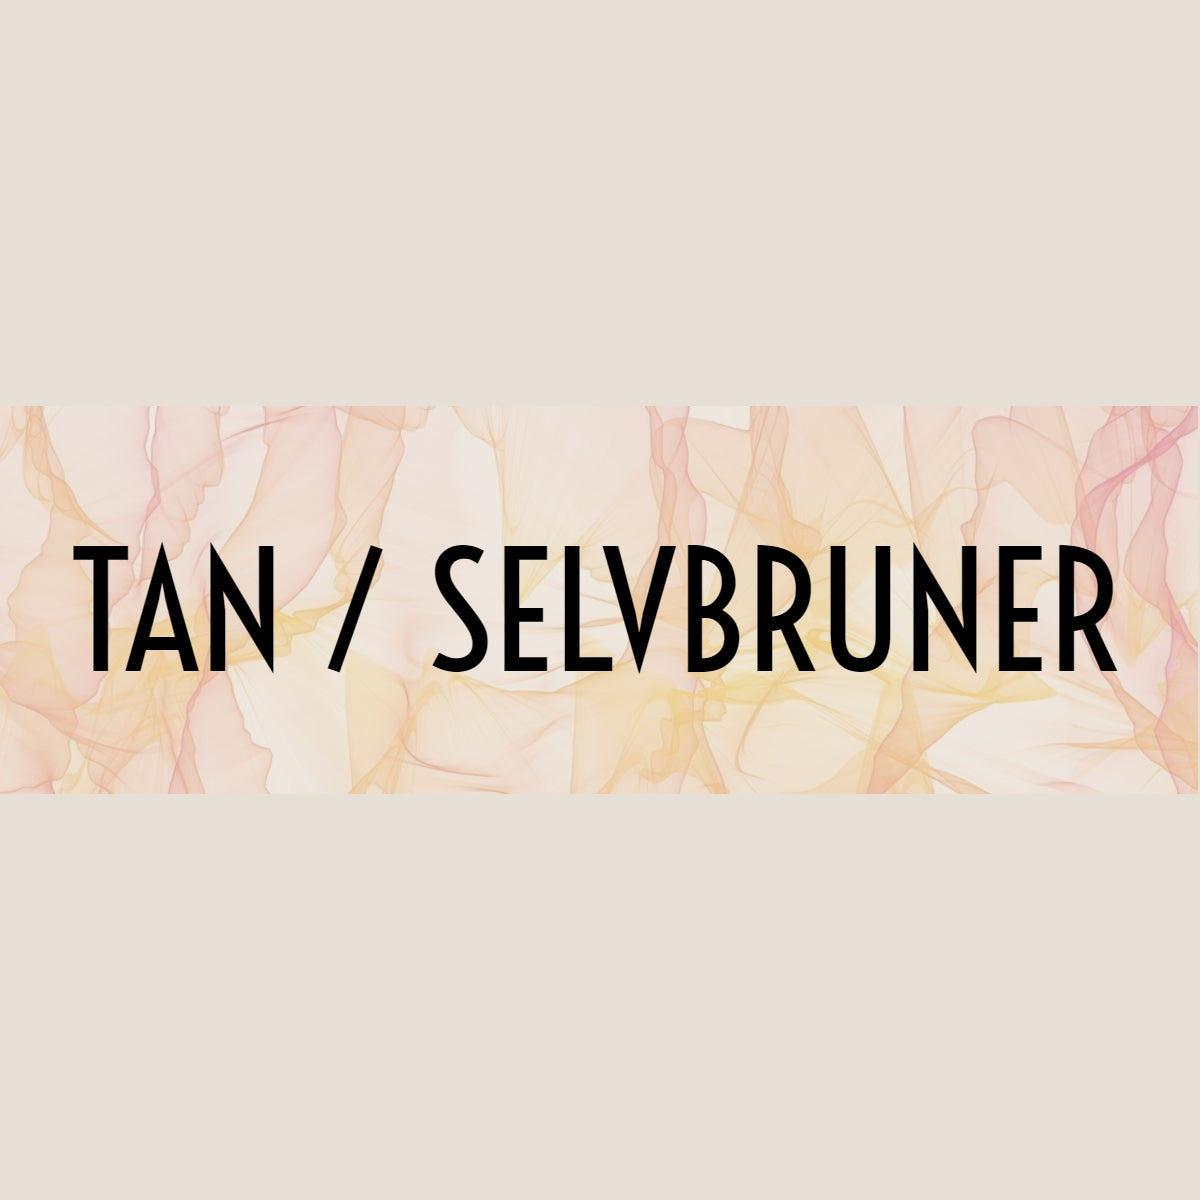 Tan / selvbruner